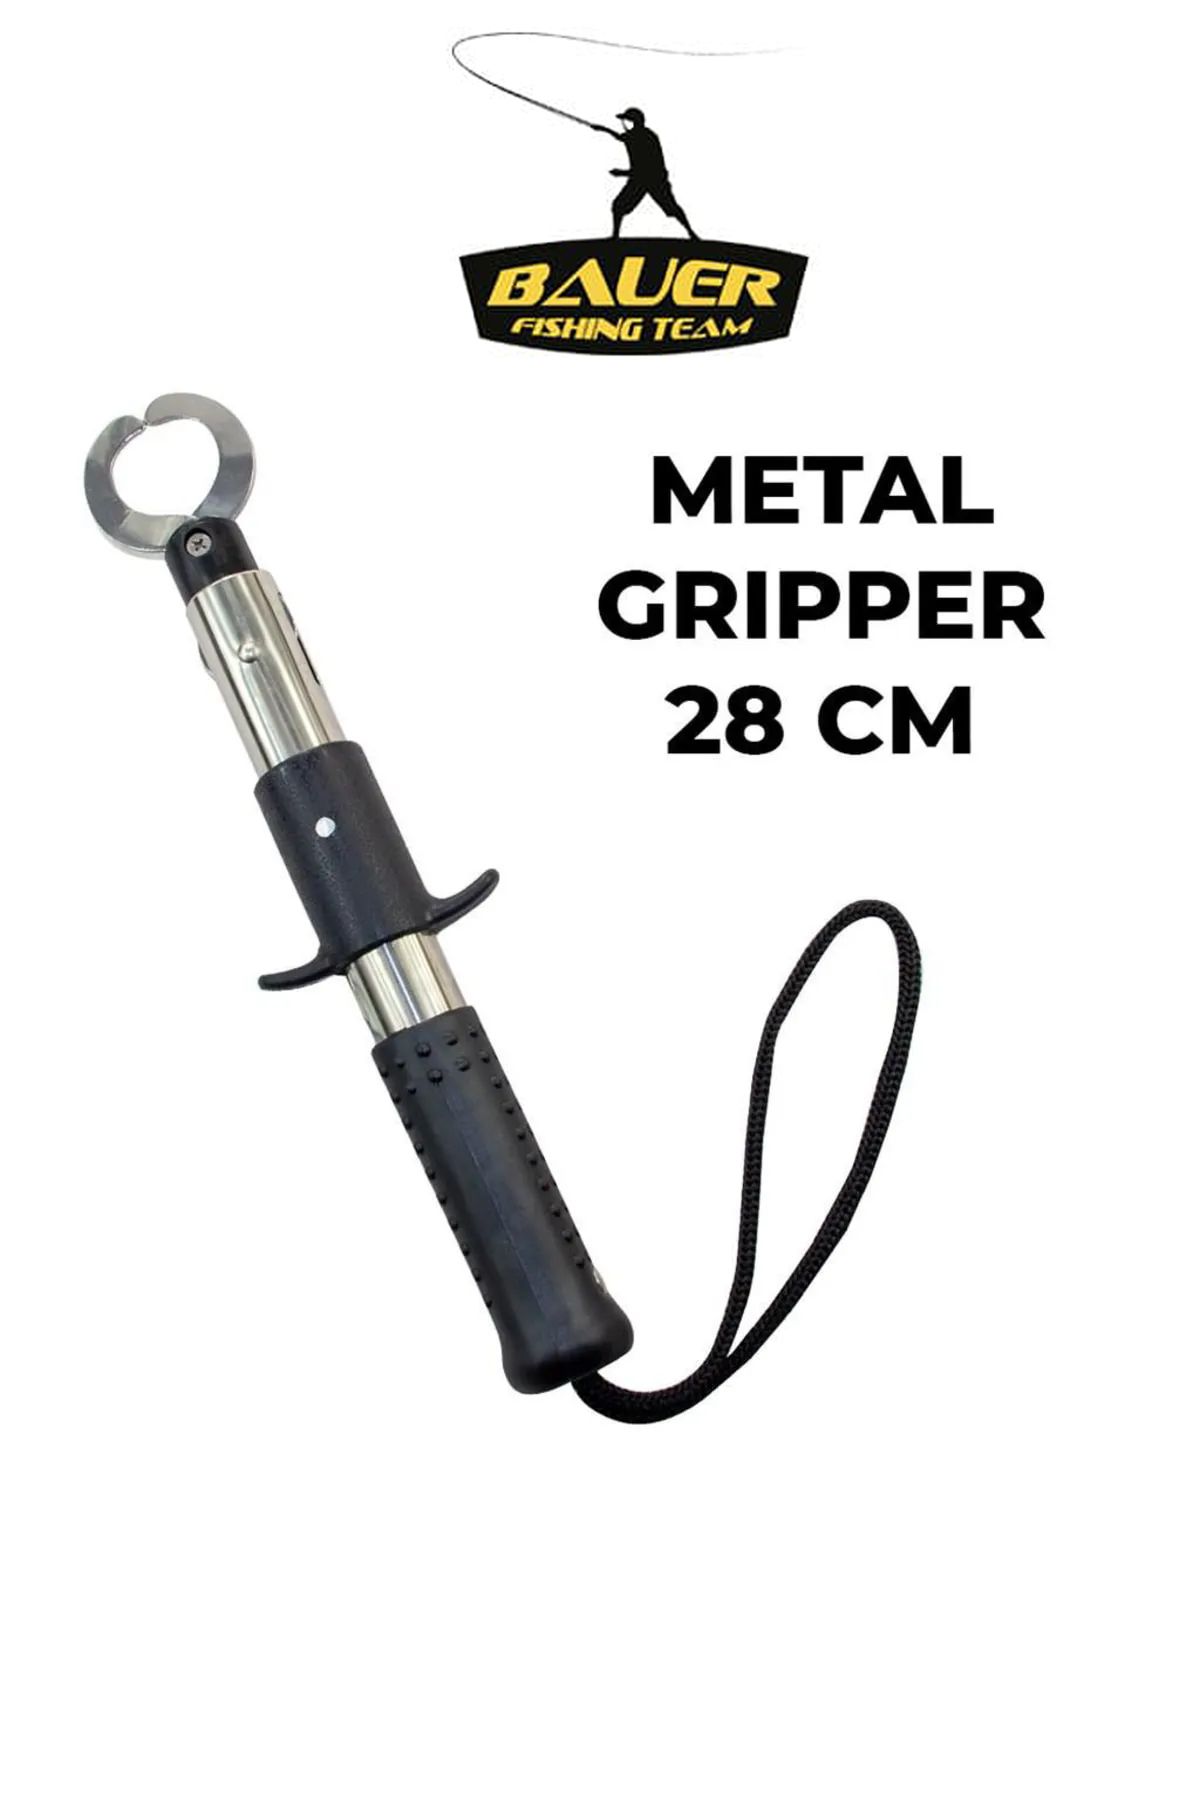 csoutdoor BAUER Metal Gripper ( 28 Cm )